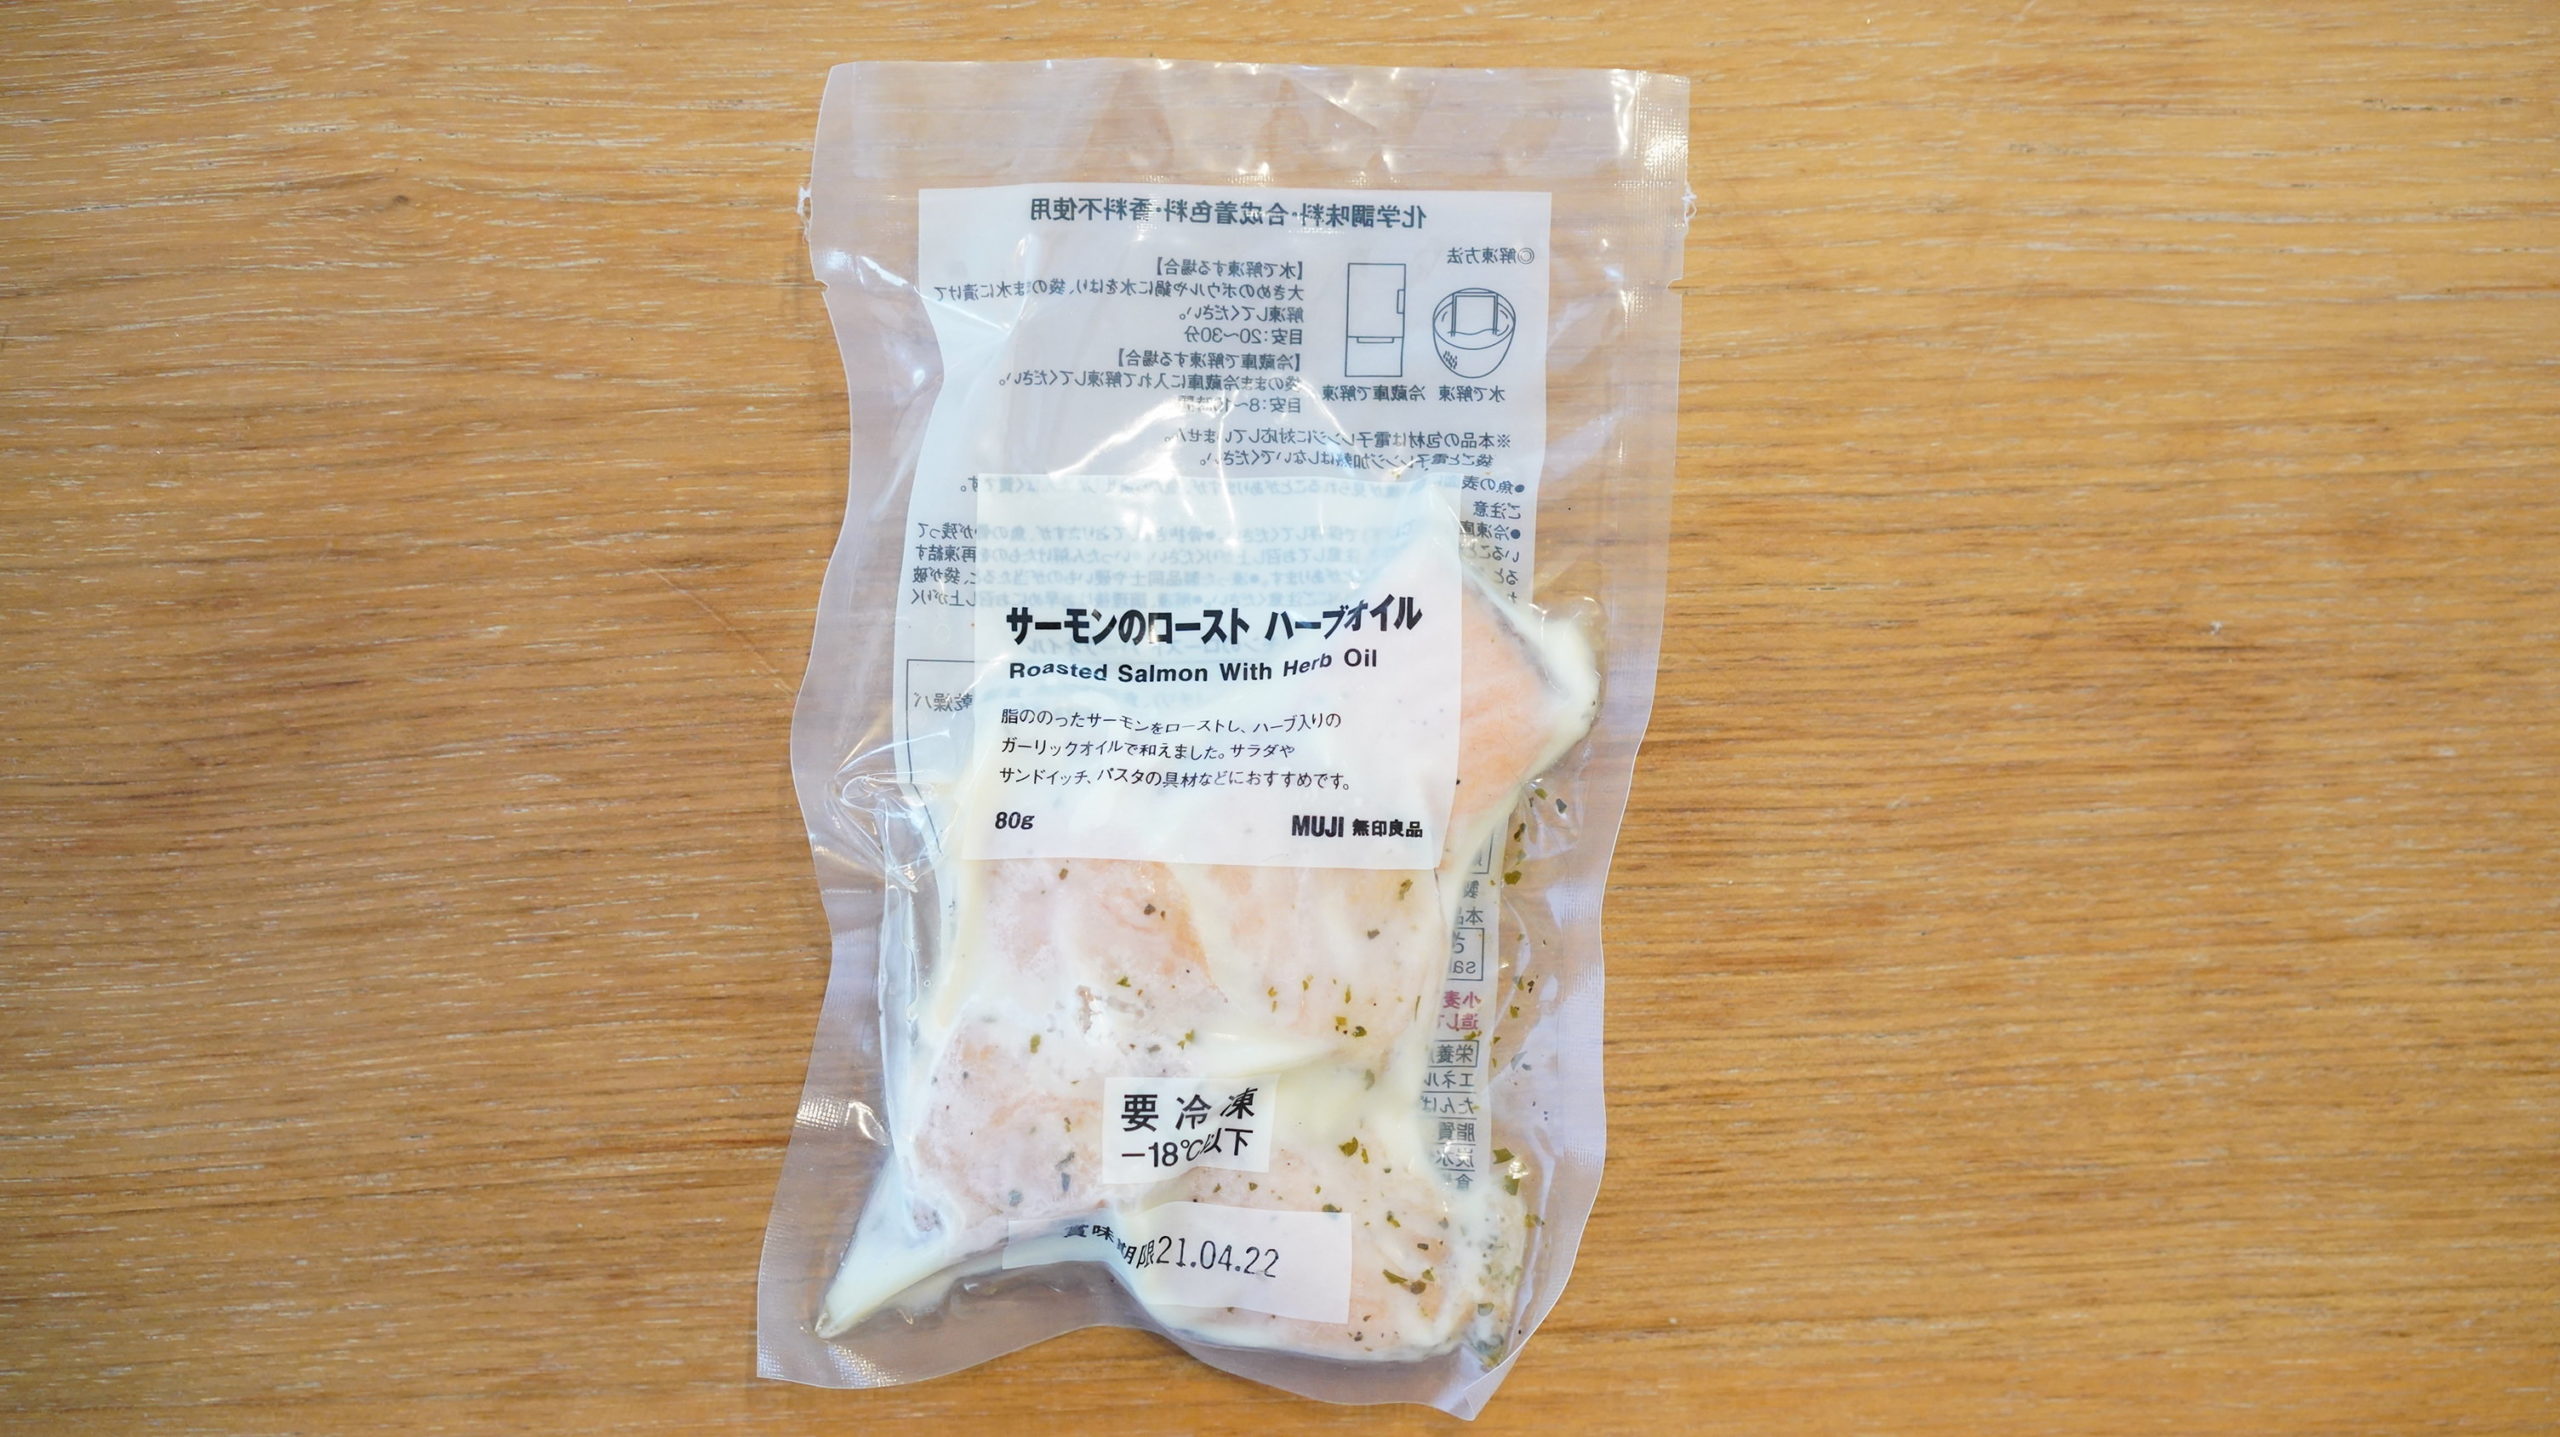 無印良品のおすすめ冷凍食品「サーモンのロースト・ハーブオイル」のパッケージの写真